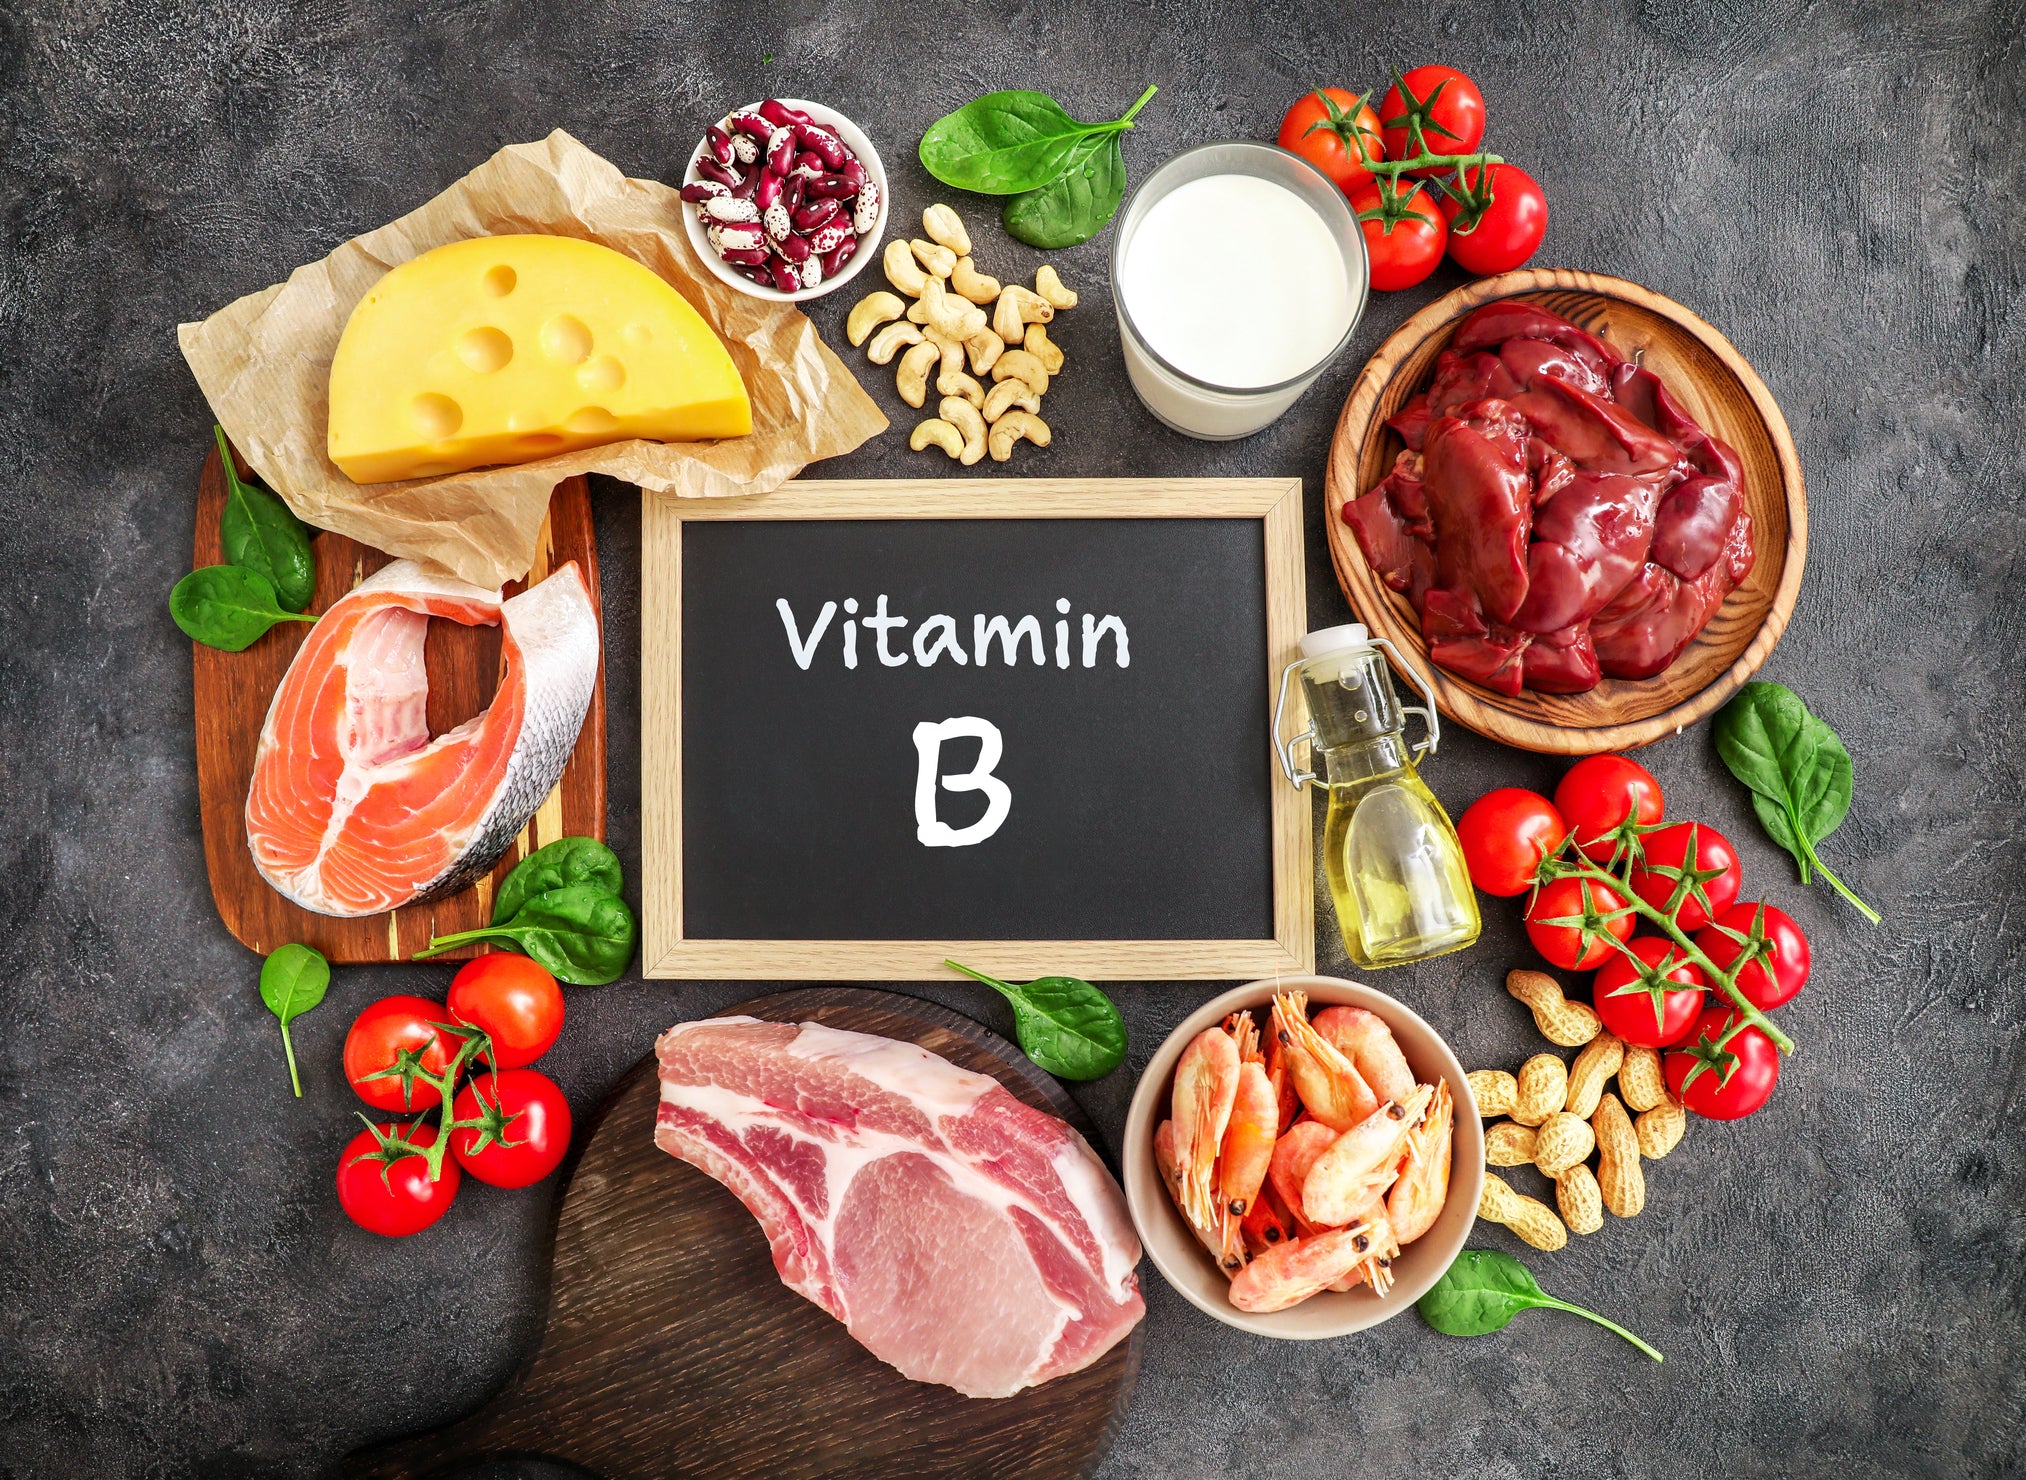 Do I Need To Take B Vitamins?